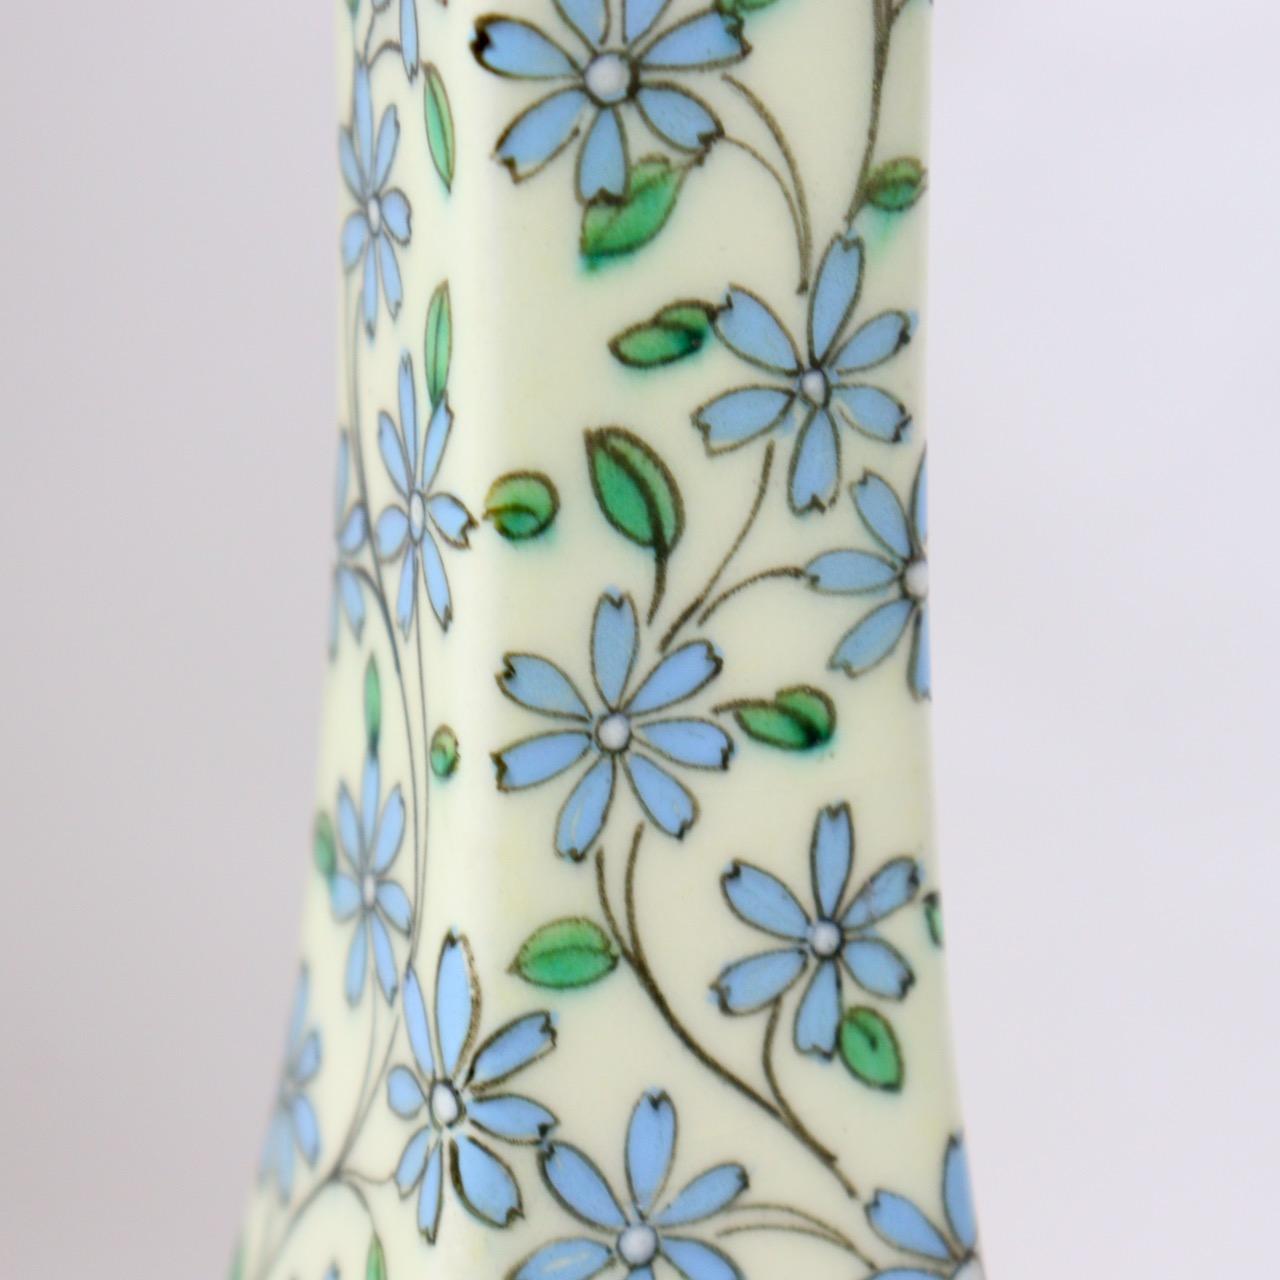 Fin du XIXe siècle Vase soliflore en faïence émaillée de Thodore Deck (1823-1891), vers 1875